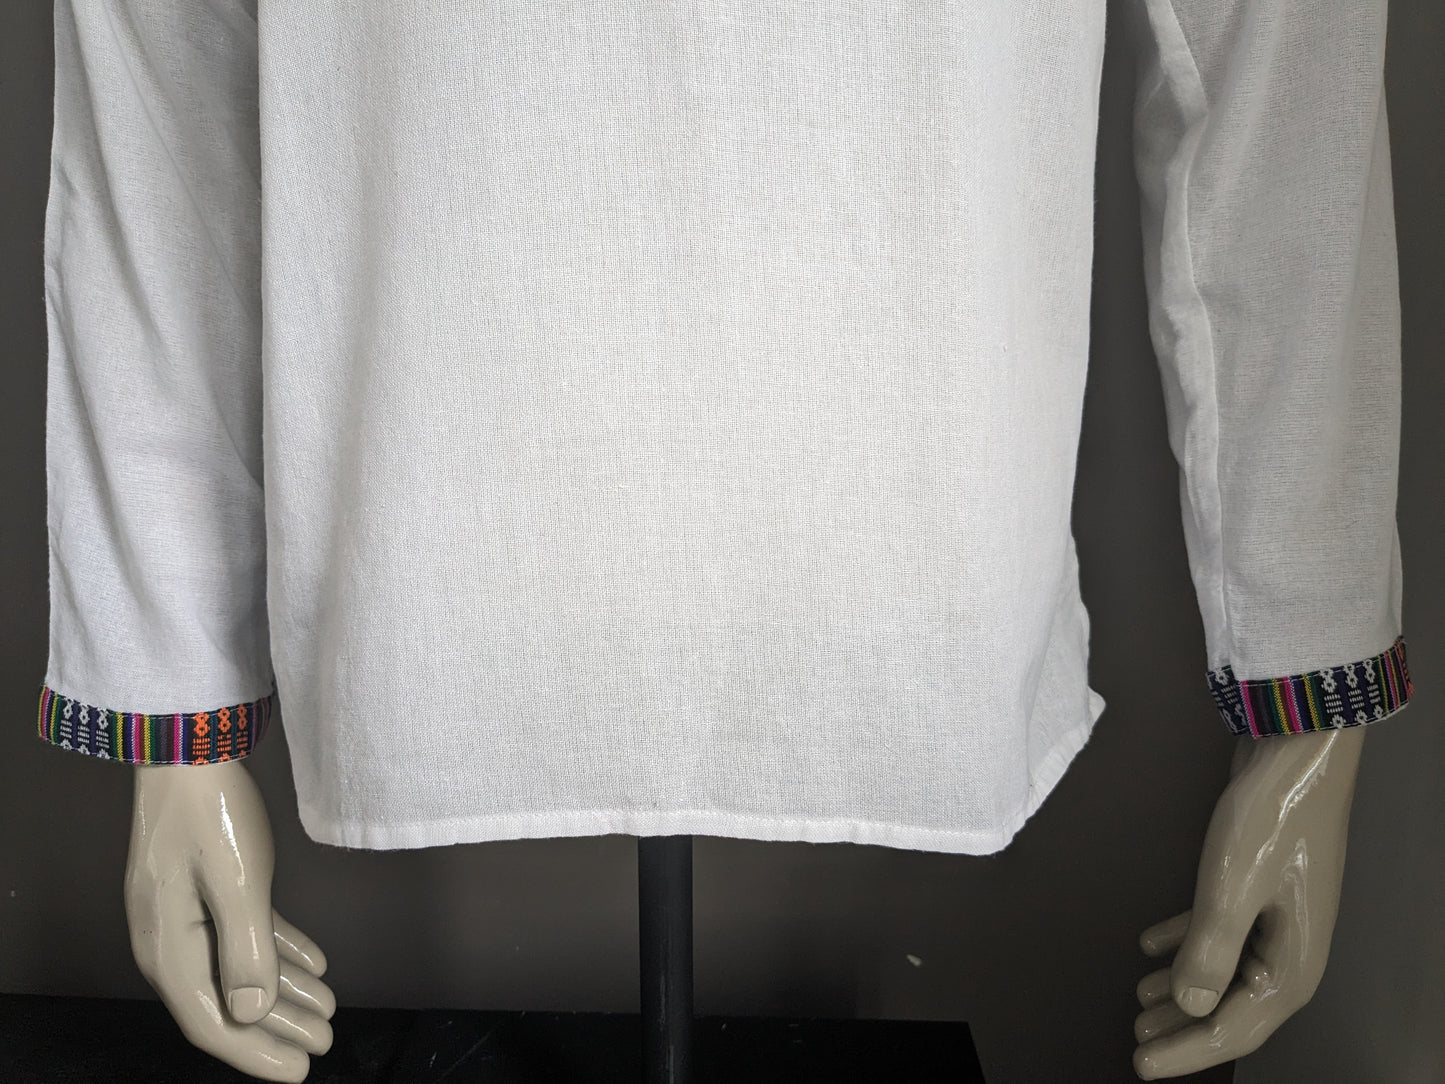 Camicia vintage con mao / agricoltore / collare in piedi. Bianco con bordi colorati. Taglia M.